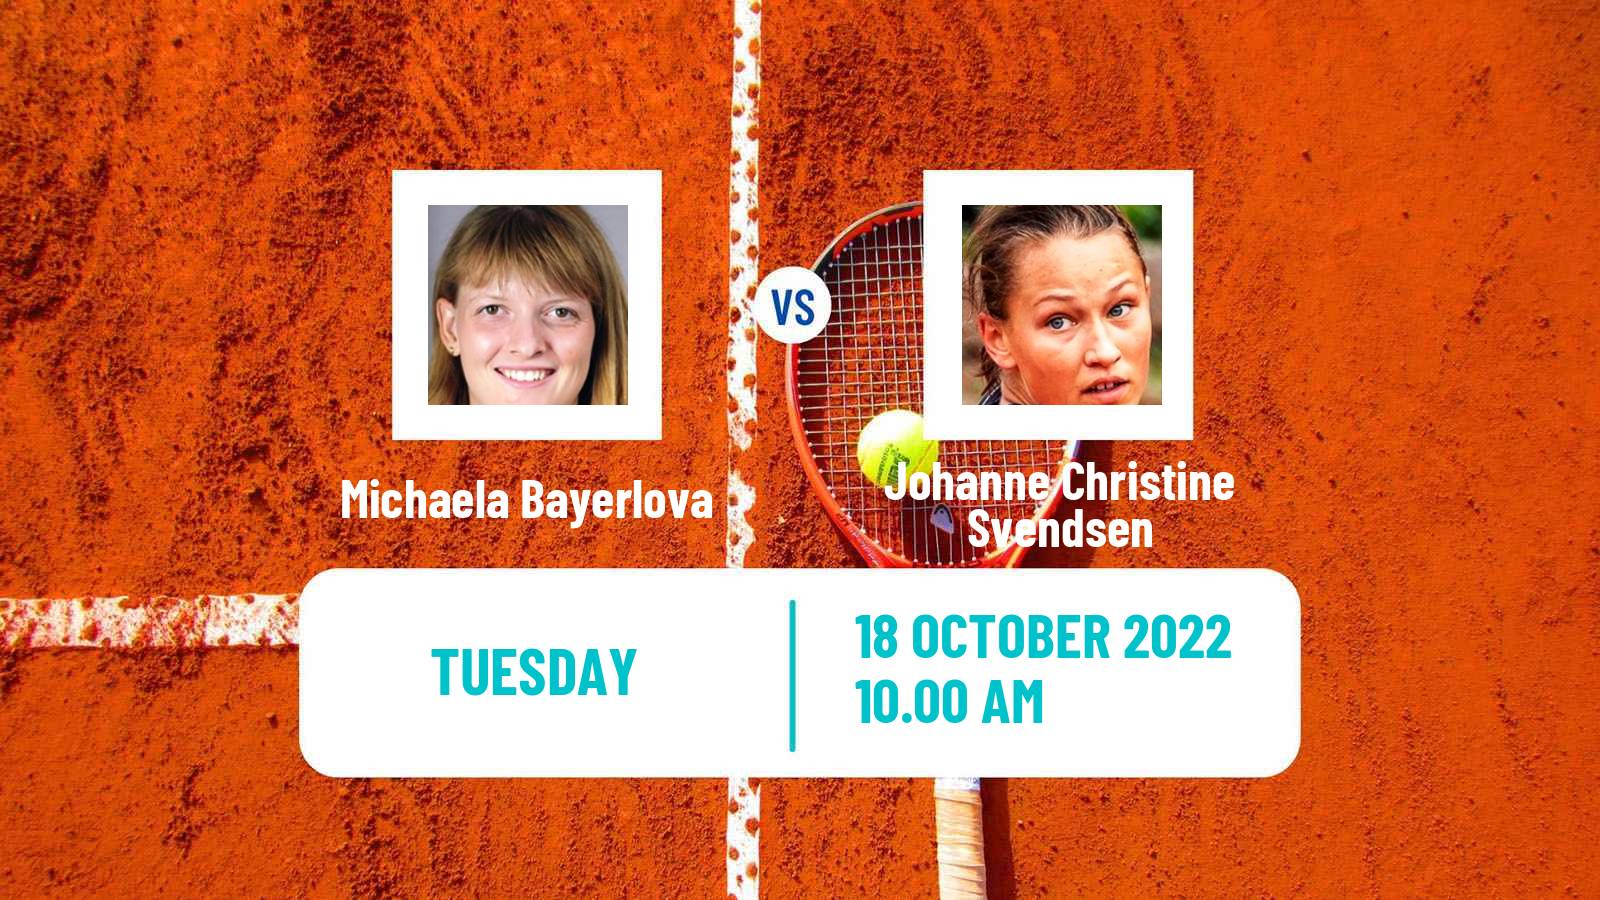 Tennis ITF Tournaments Michaela Bayerlova - Johanne Christine Svendsen